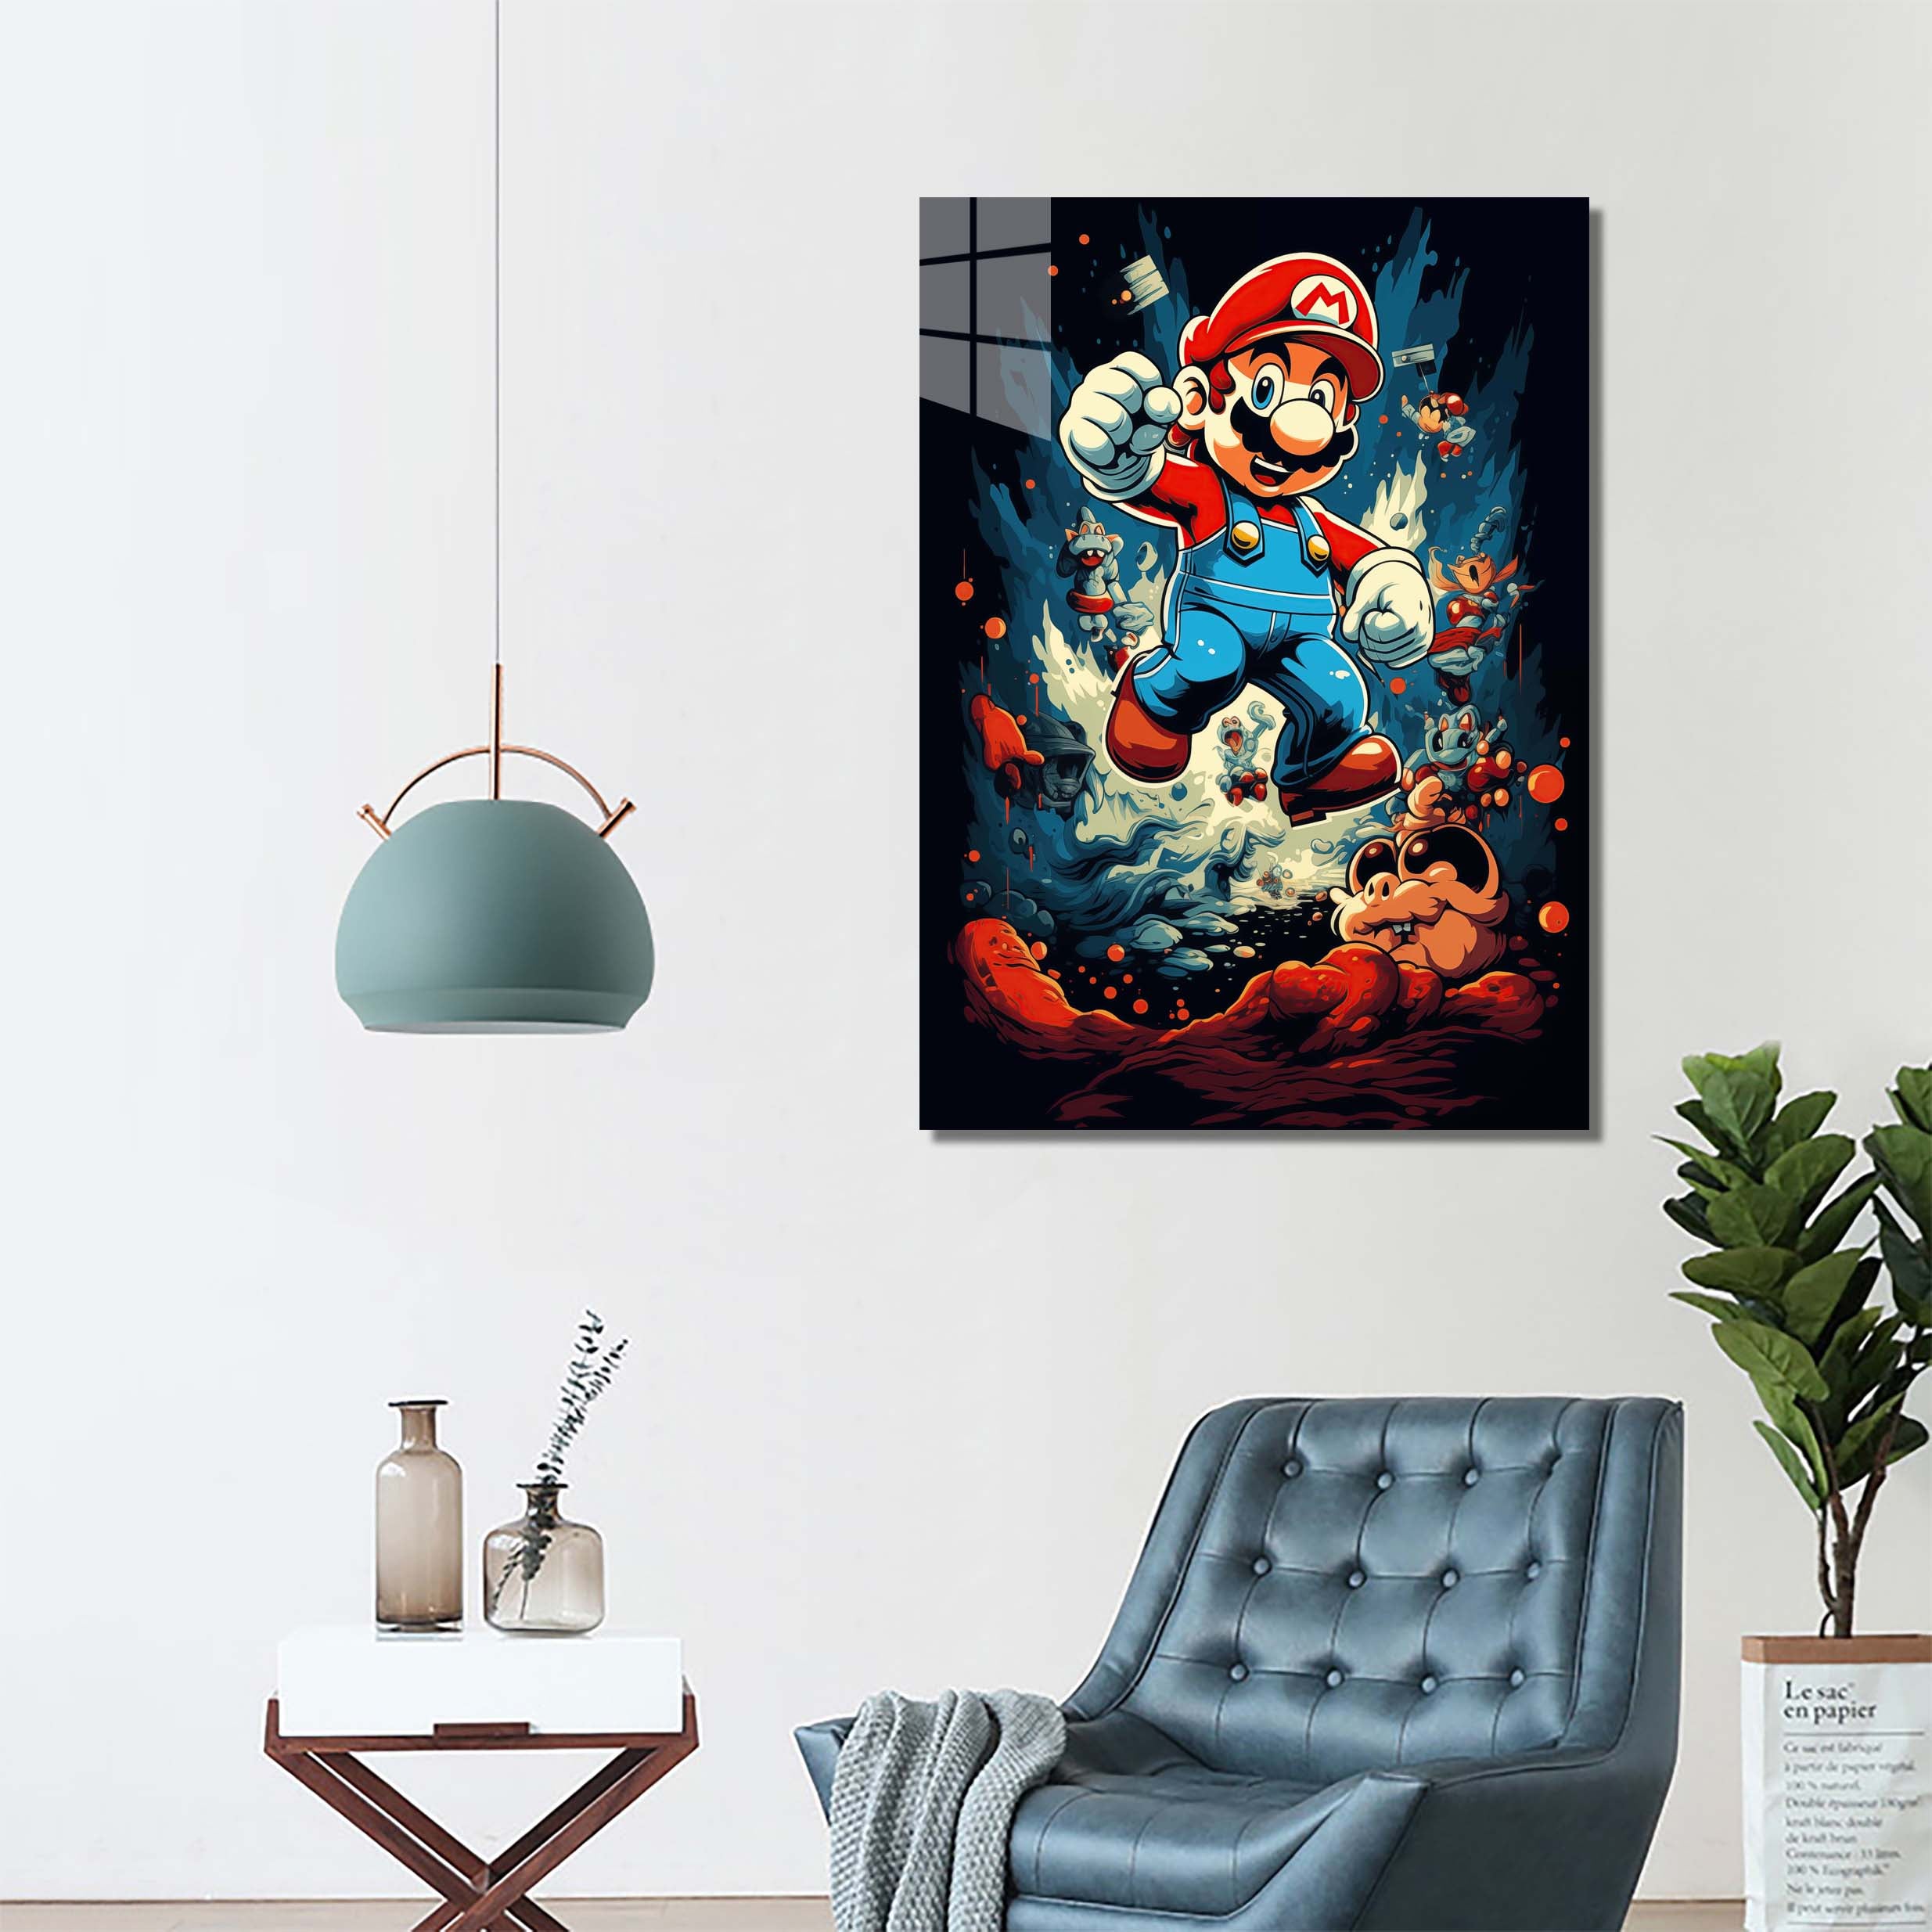 Super Mario Jump-designed by @SAMCRO